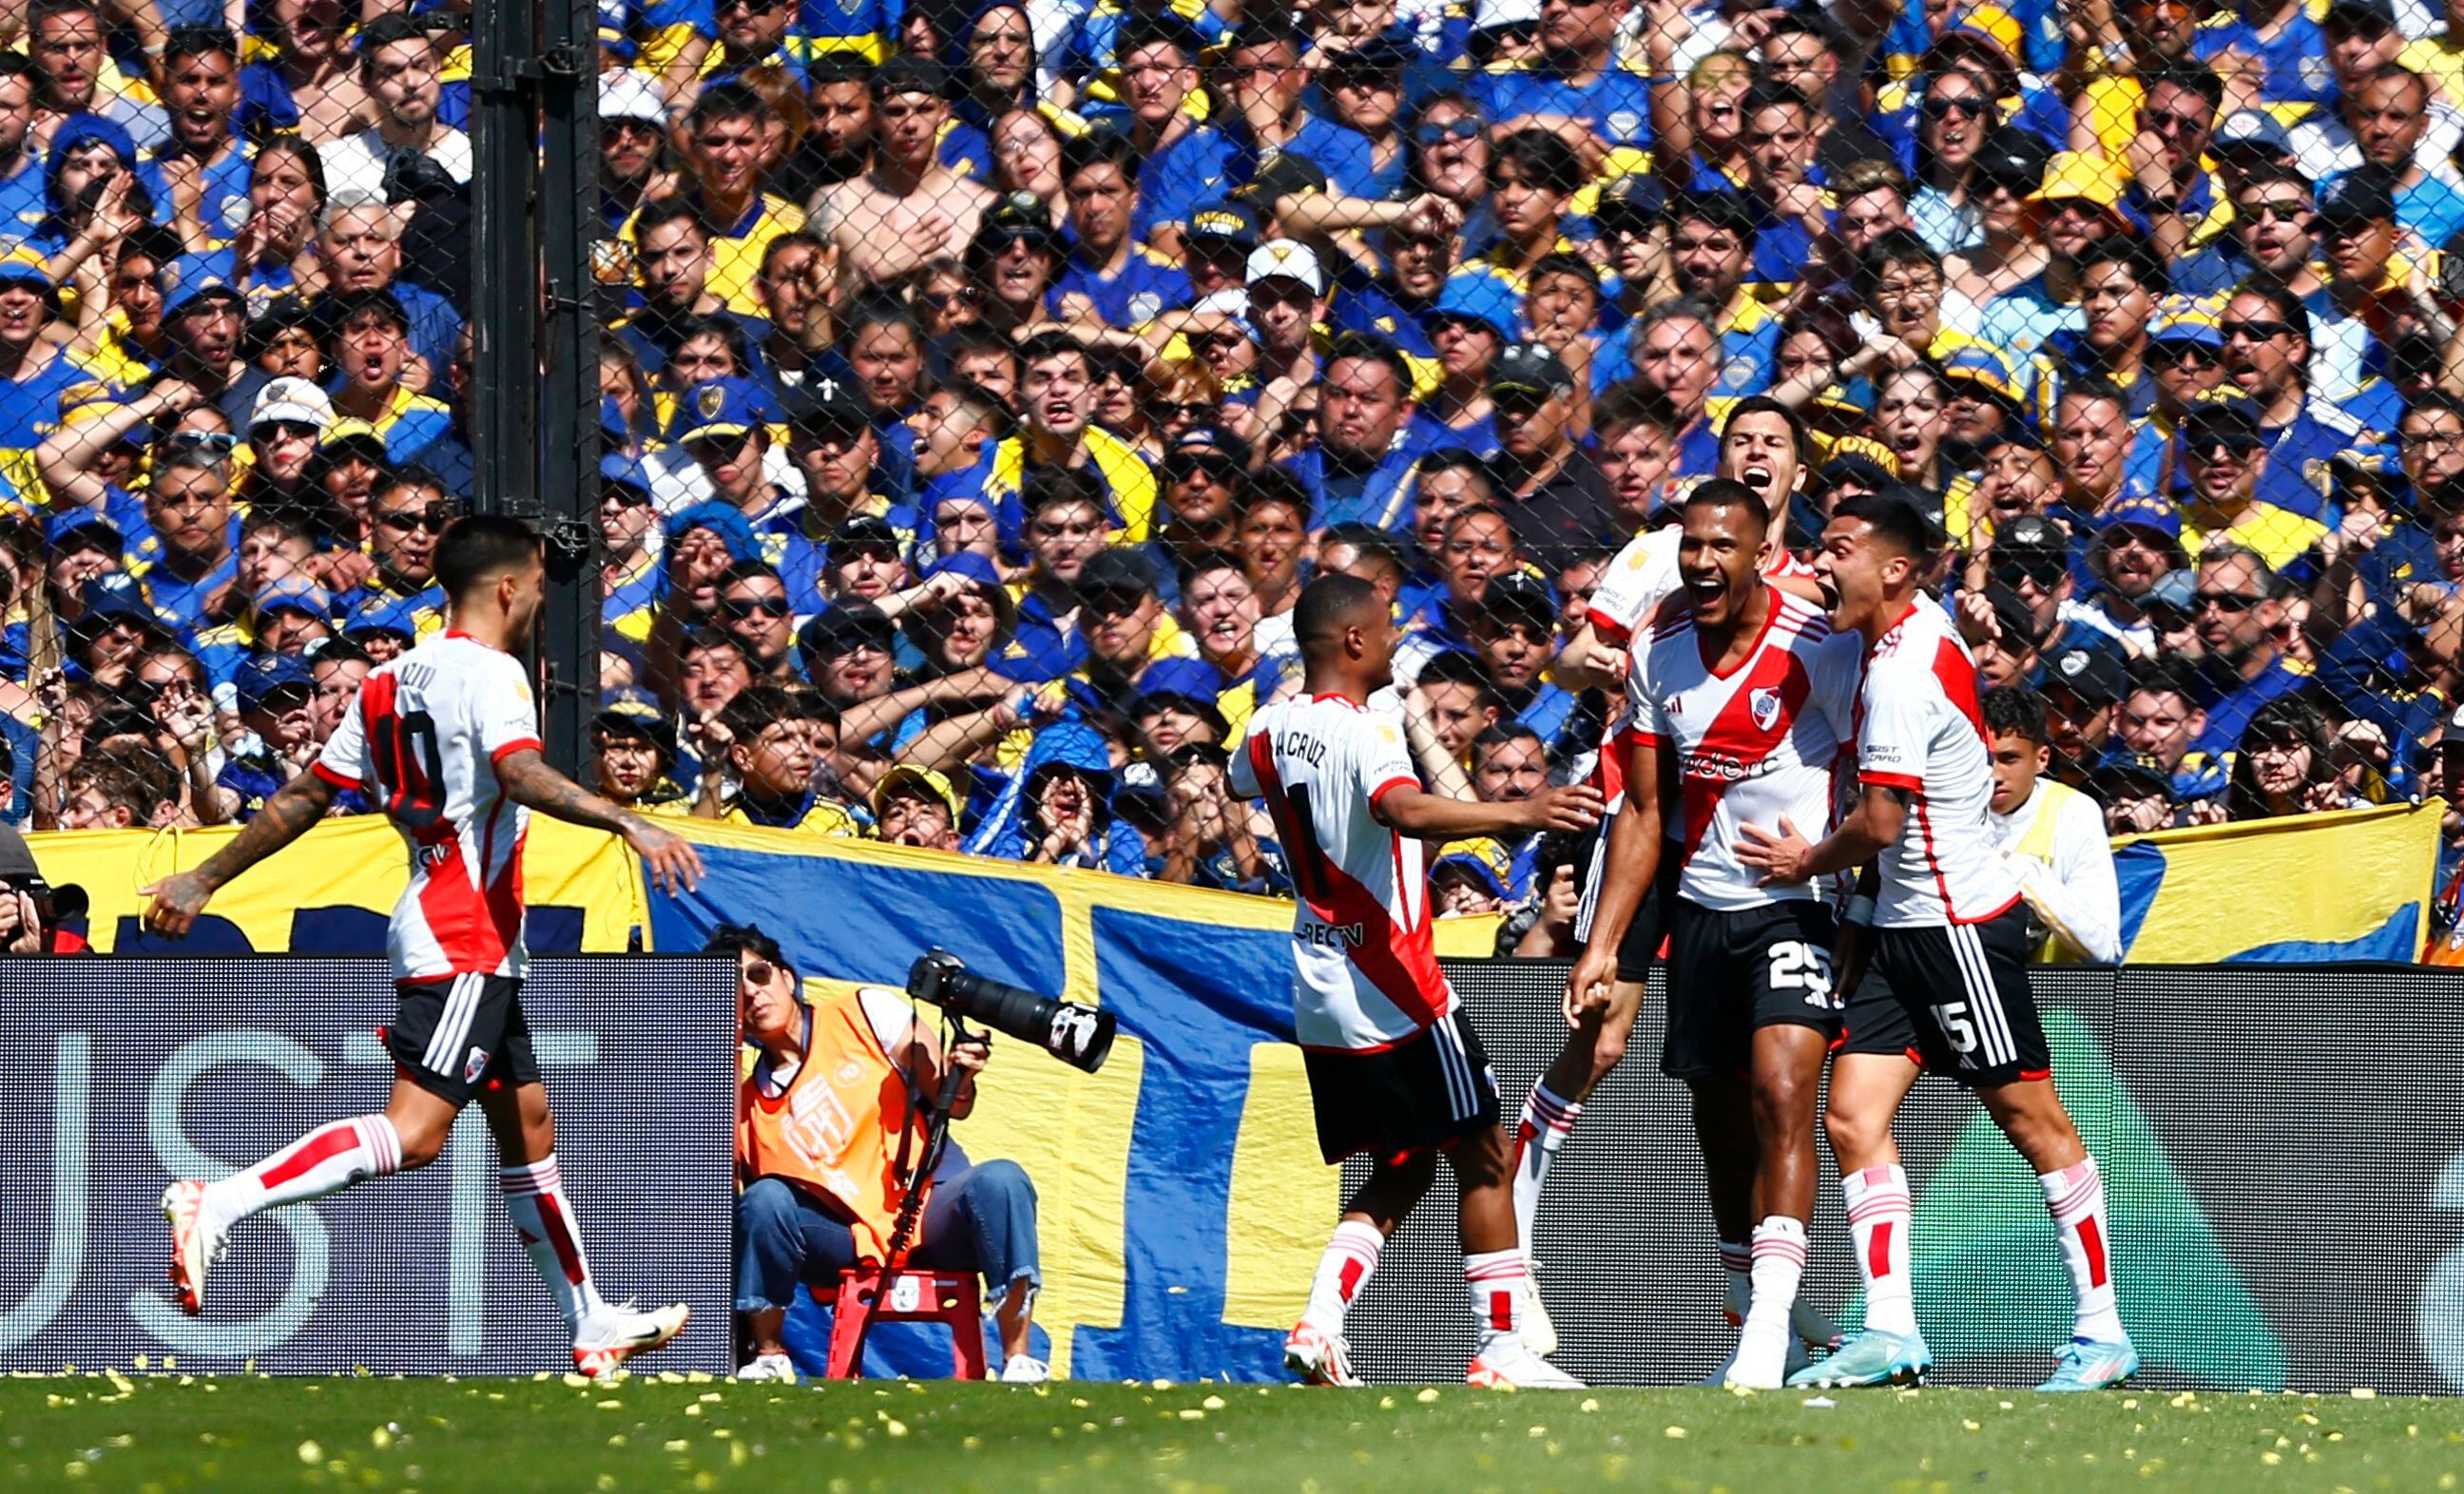 La celebración de los jugadores de River tras el primer gol de Salomón Rondón en la Bombonera (REUTERS/Cristina Sille)